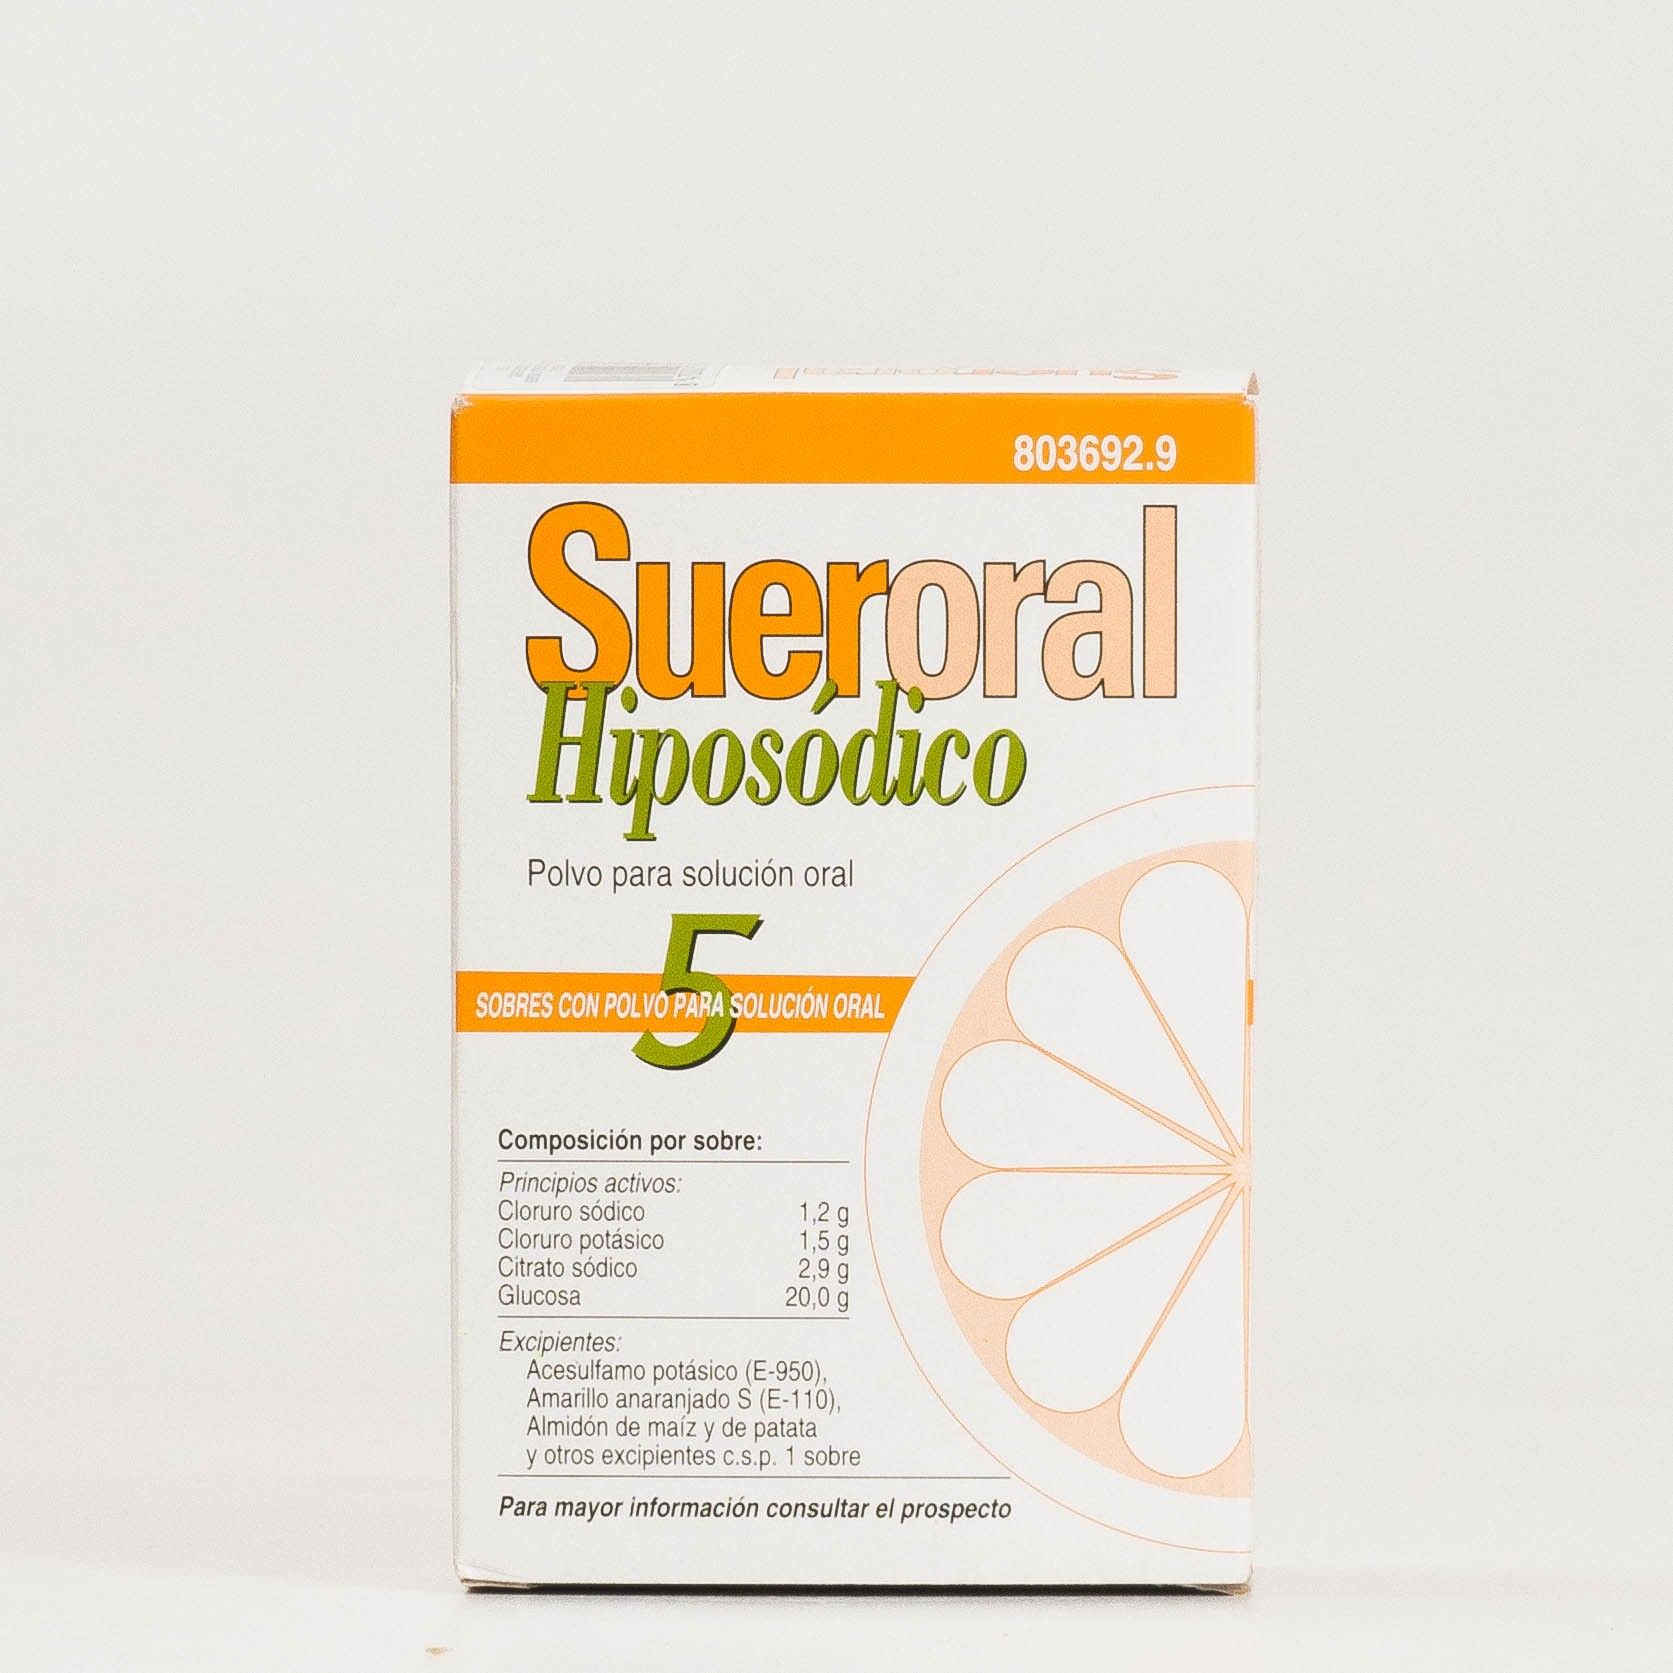 Sueroral Hiposódico 5 sobres para solución oral